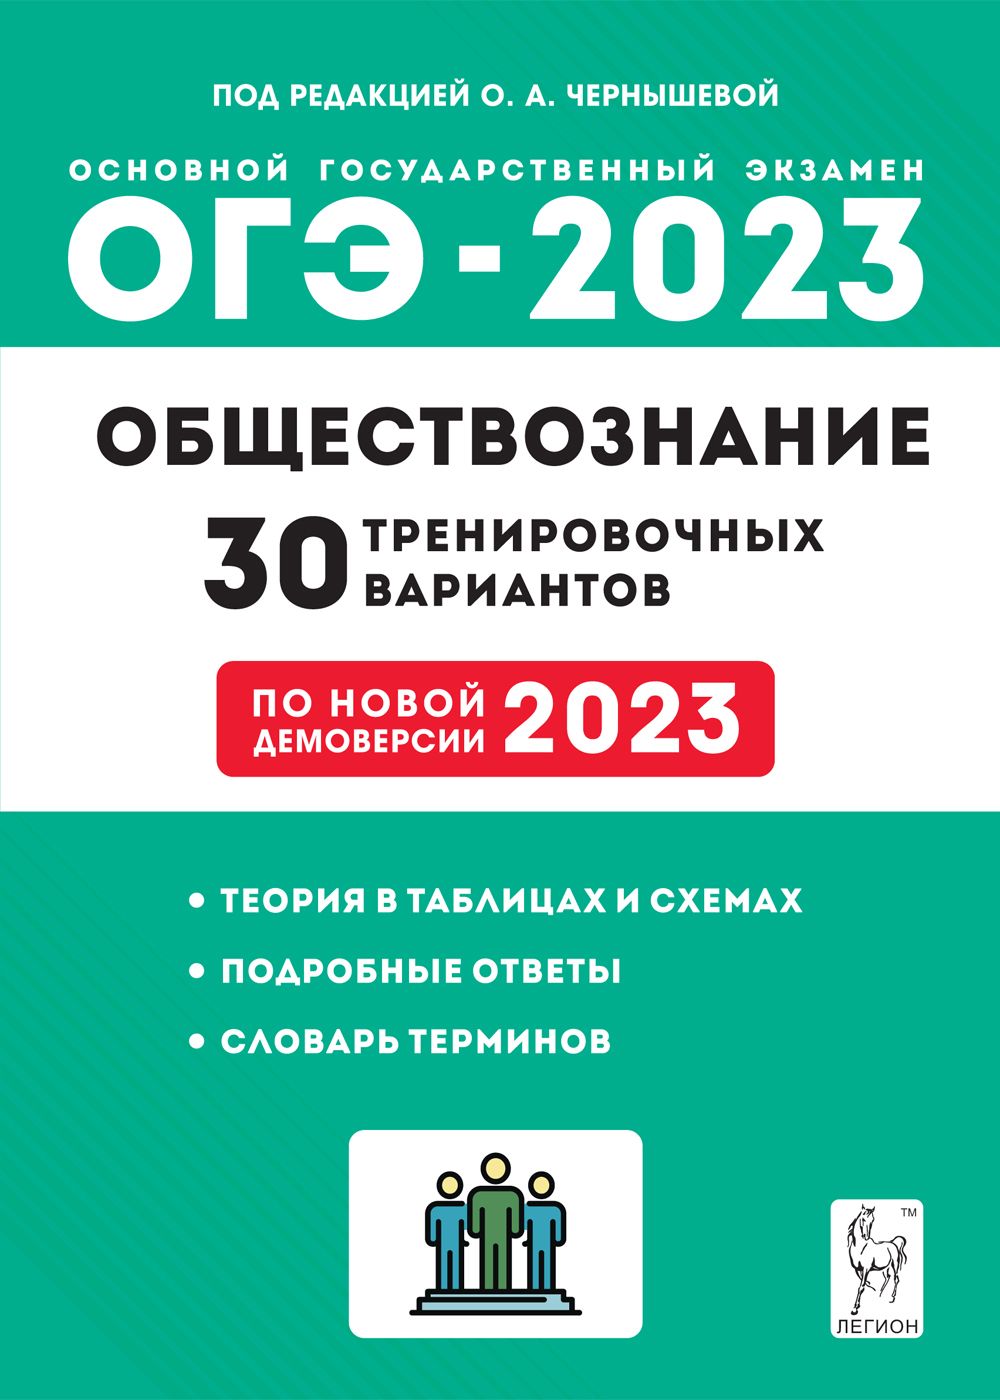 Обществознание. Подготовка к ОГЭ-2023. 30 тренировочных вариантов по демоверсии 2023 года